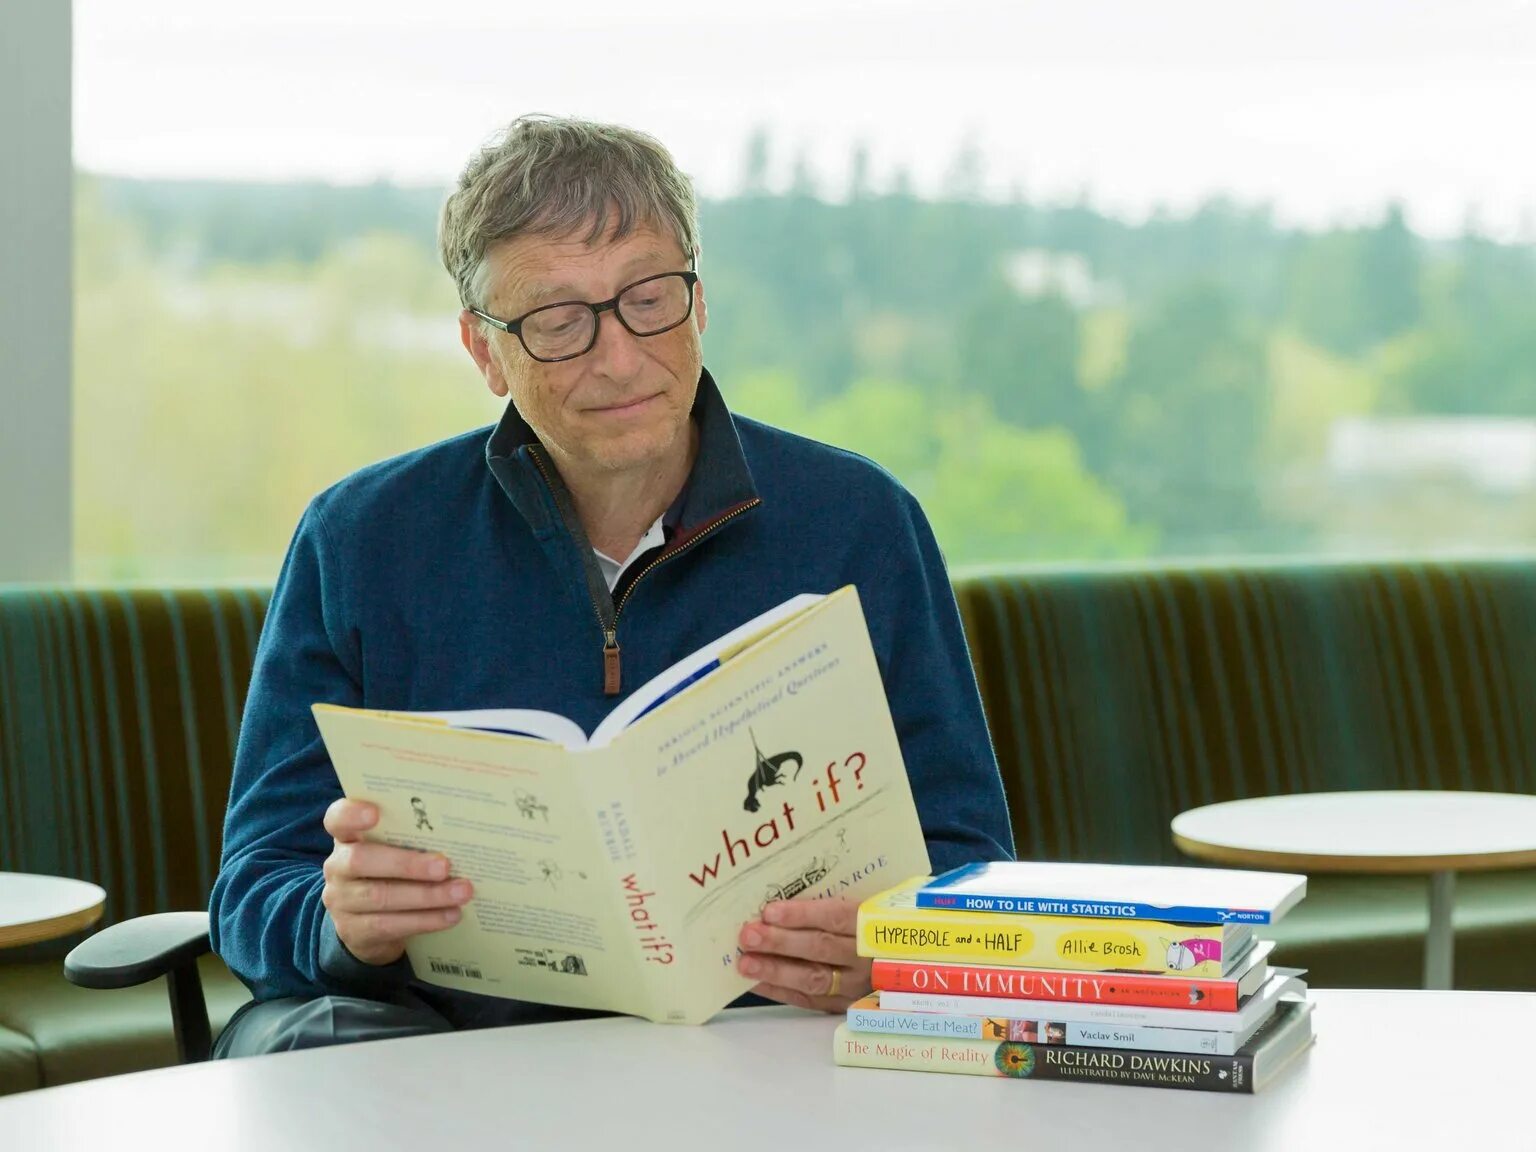 Билл Гейтс. Билл Гейтс книги. Билл Гейтс основатель Microsoft. Билл Гейтс with book. Звезда читаем сегодня